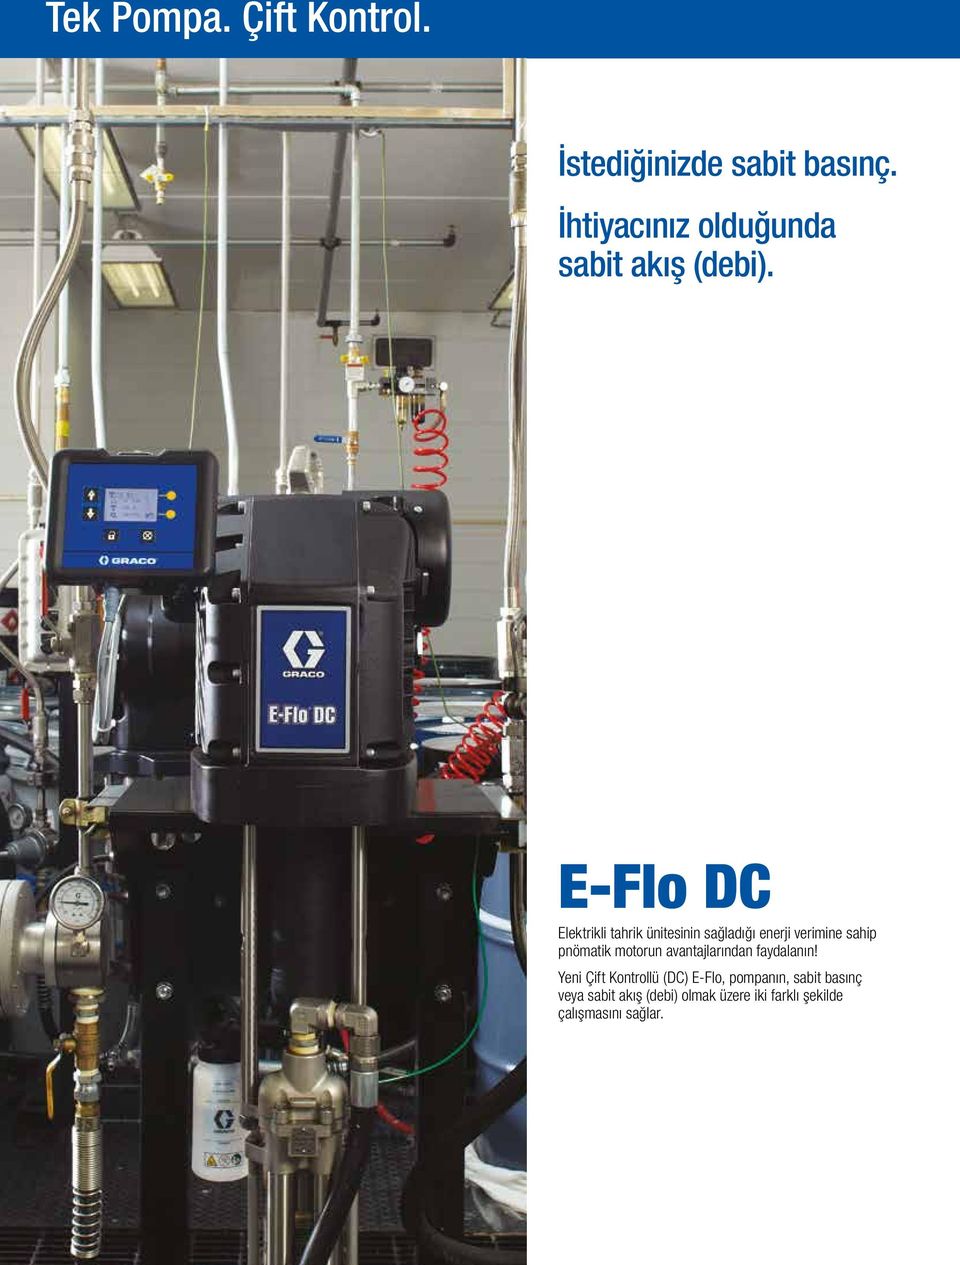 E-Flo DC Elektrikli tahrik ünitesinin sağladığı enerji verimine sahip pnömatik